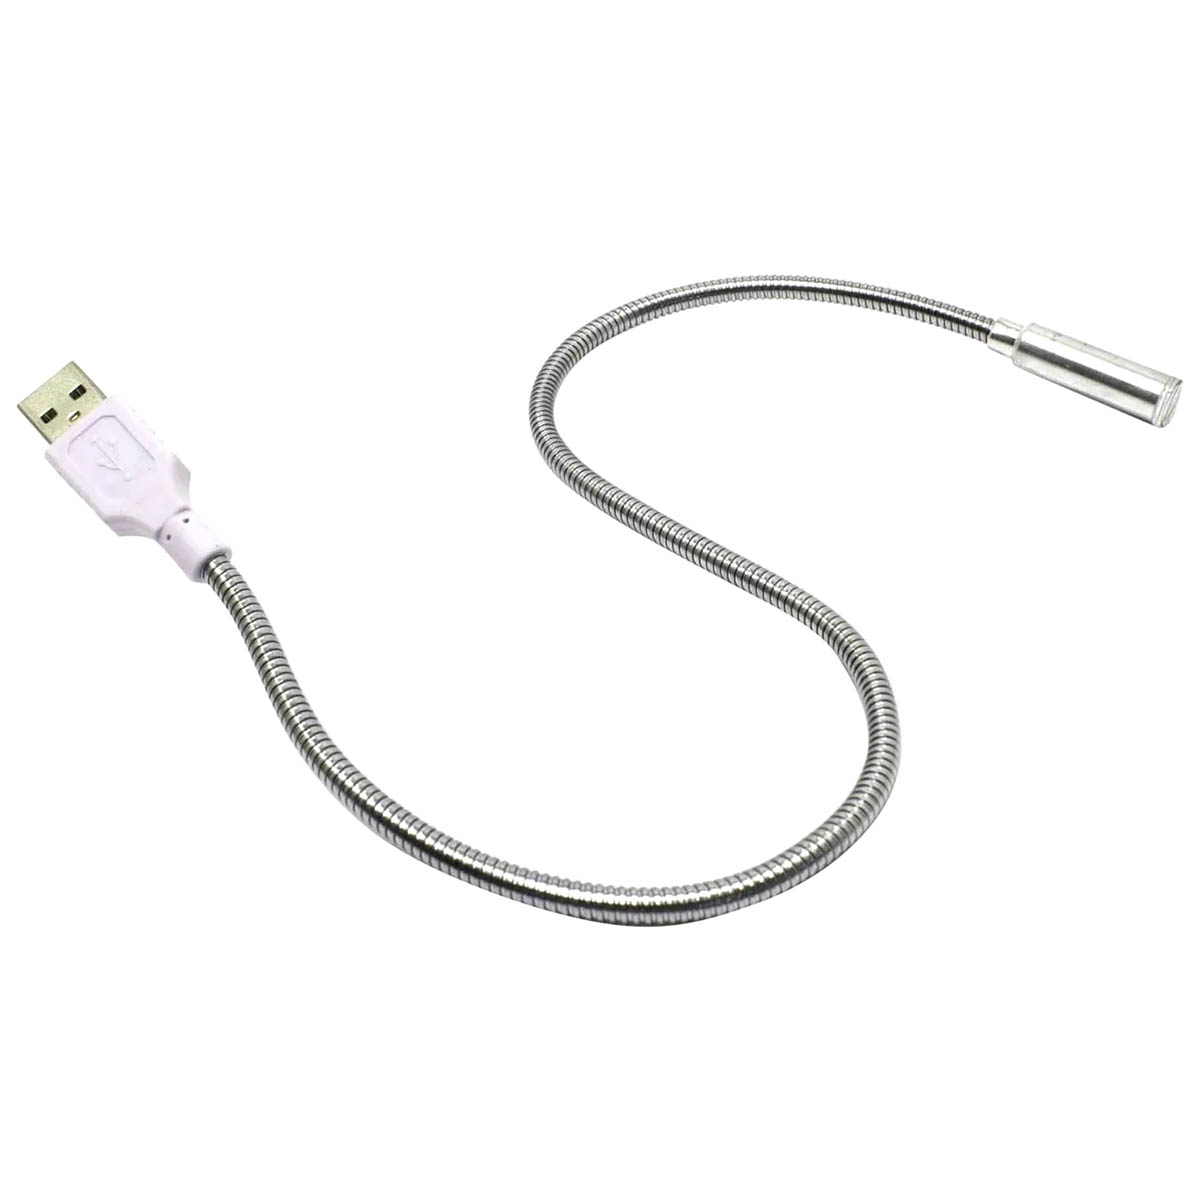 LED USB светильник CBR CL 100S, металл, цвет серебристый